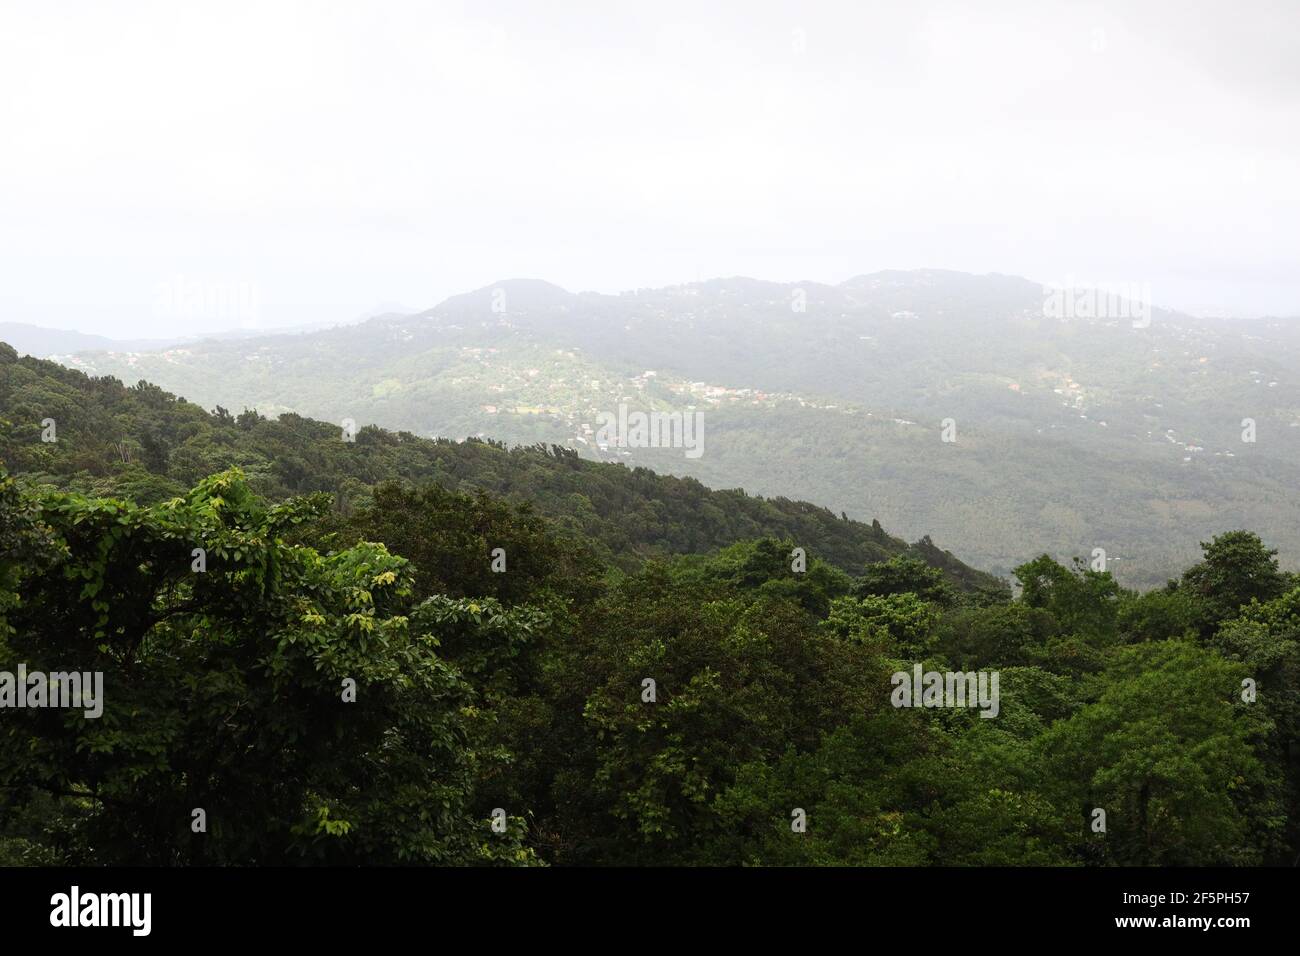 Vista de la bóveda forestal y las ondulantes montañas de Santa Lucía desde la selva tropical de Babonneau. Foto de stock